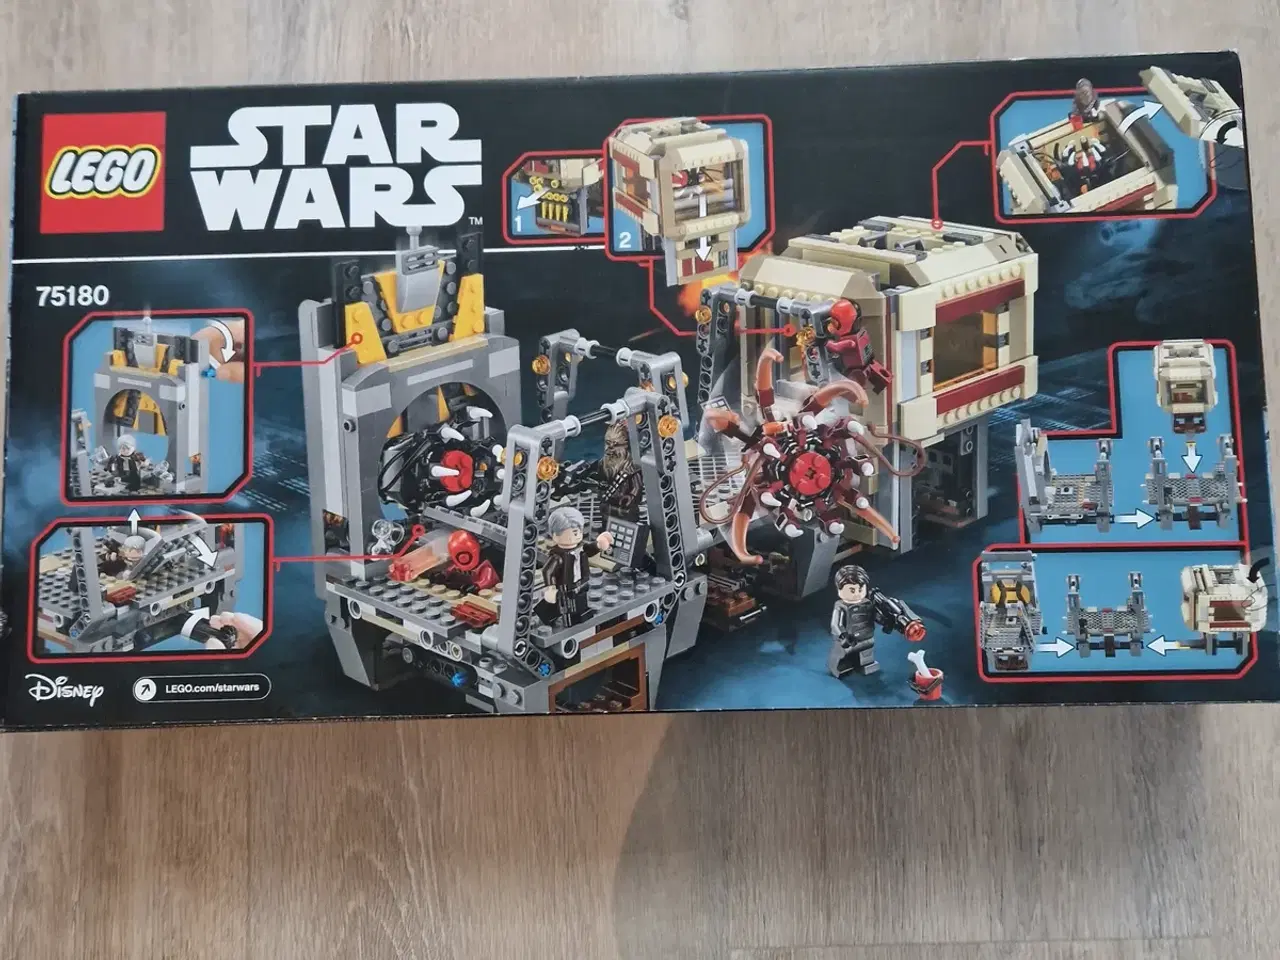 Billede 2 - Lego Star Wars, 75180 - Rathar Escape